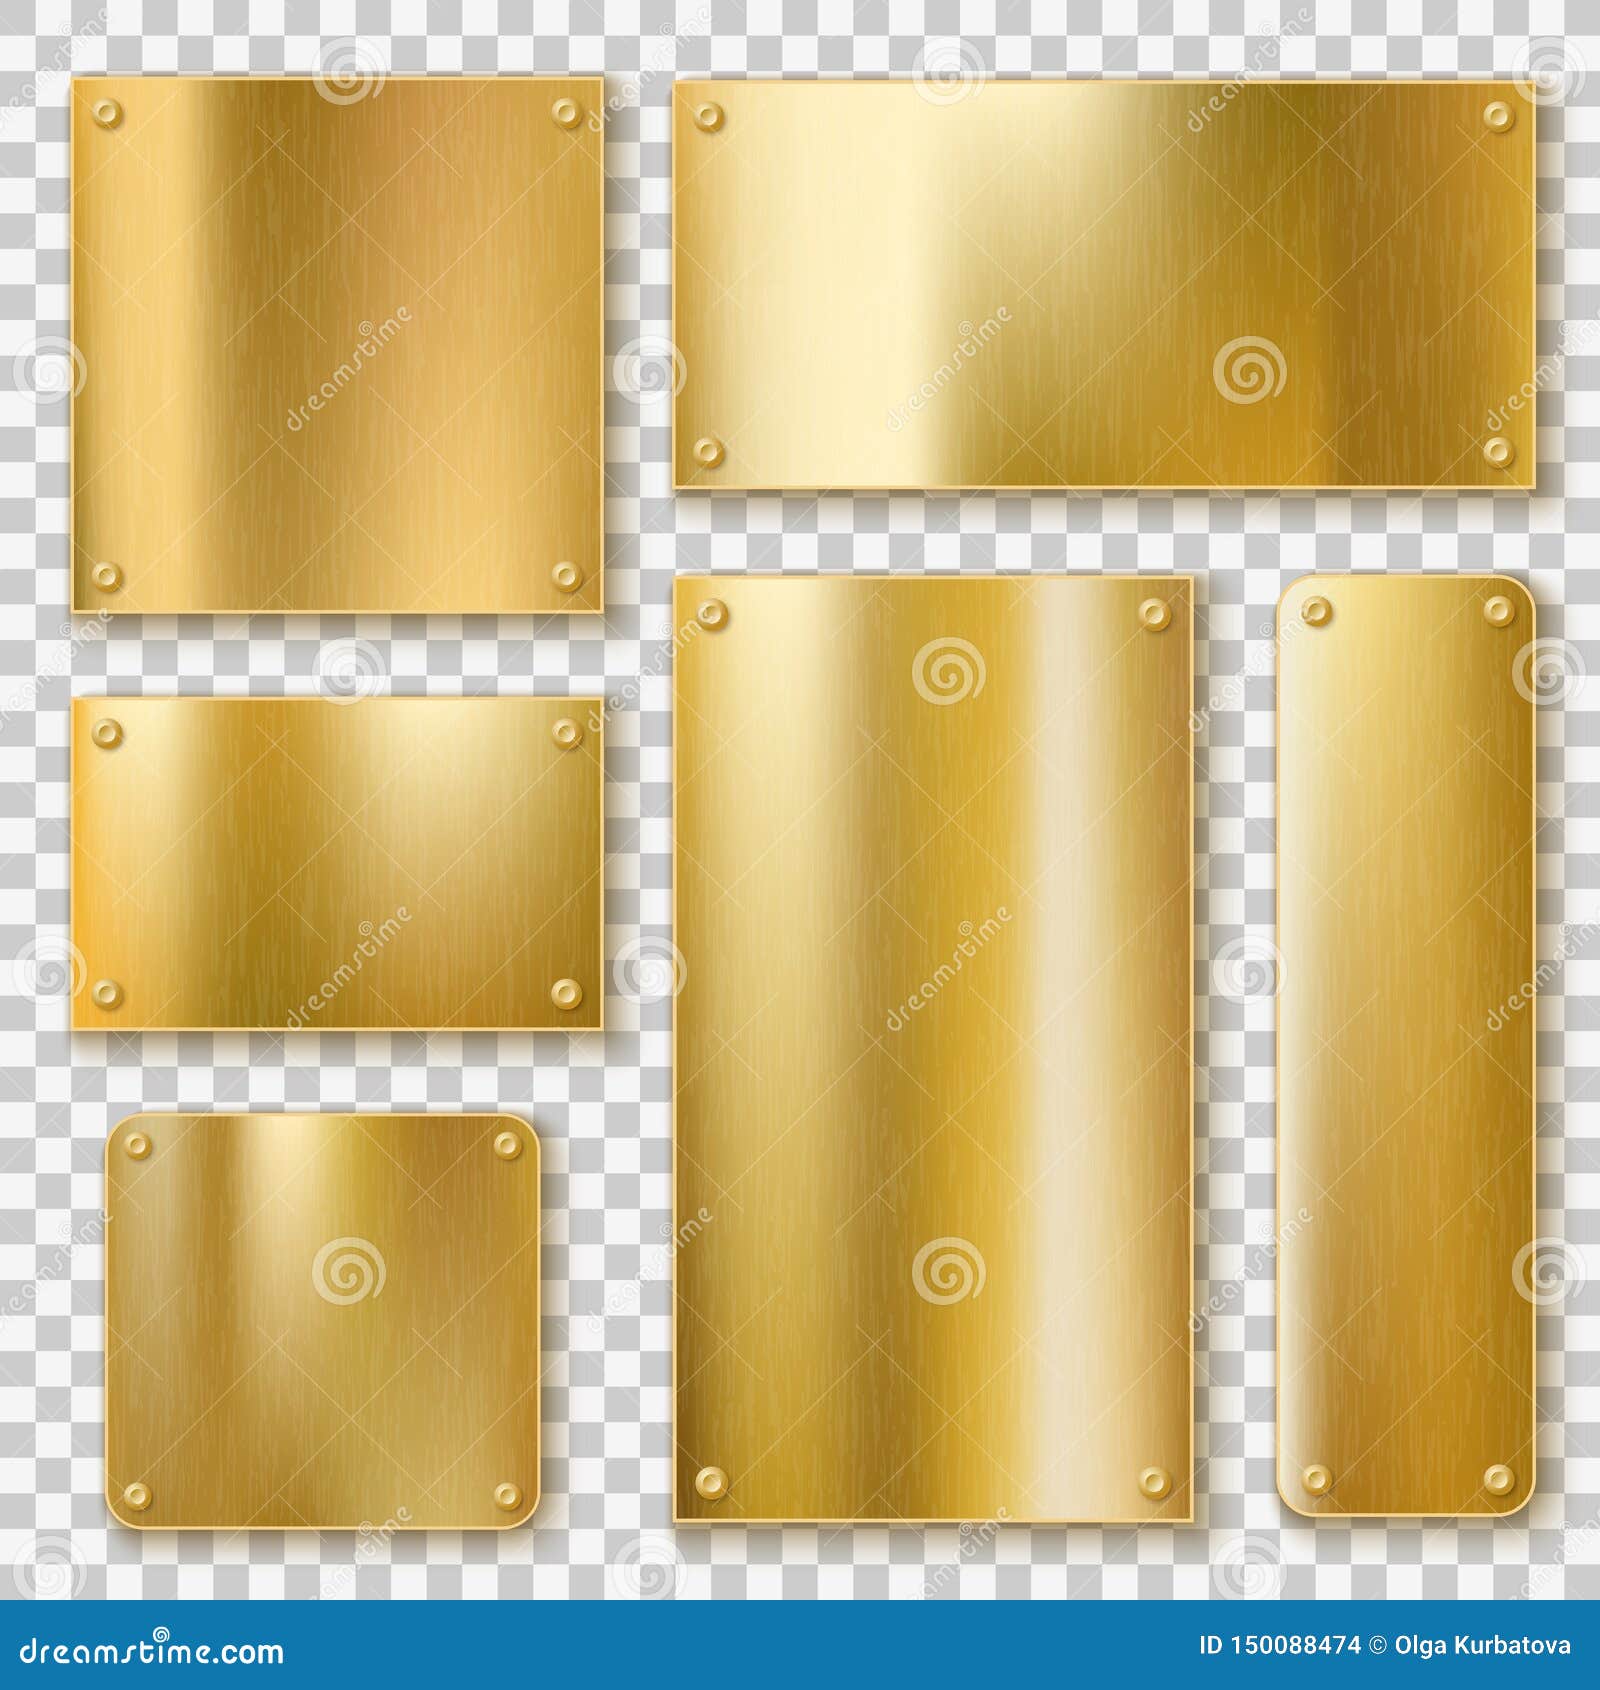 https://thumbs.dreamstime.com/z/goldene-platten-goldmetallische-gelbe-platte-gl%C3%A4nzende-bronzefahne-strukturierter-leerer-polieraufkleber-mit-den-schrauben-150088474.jpg